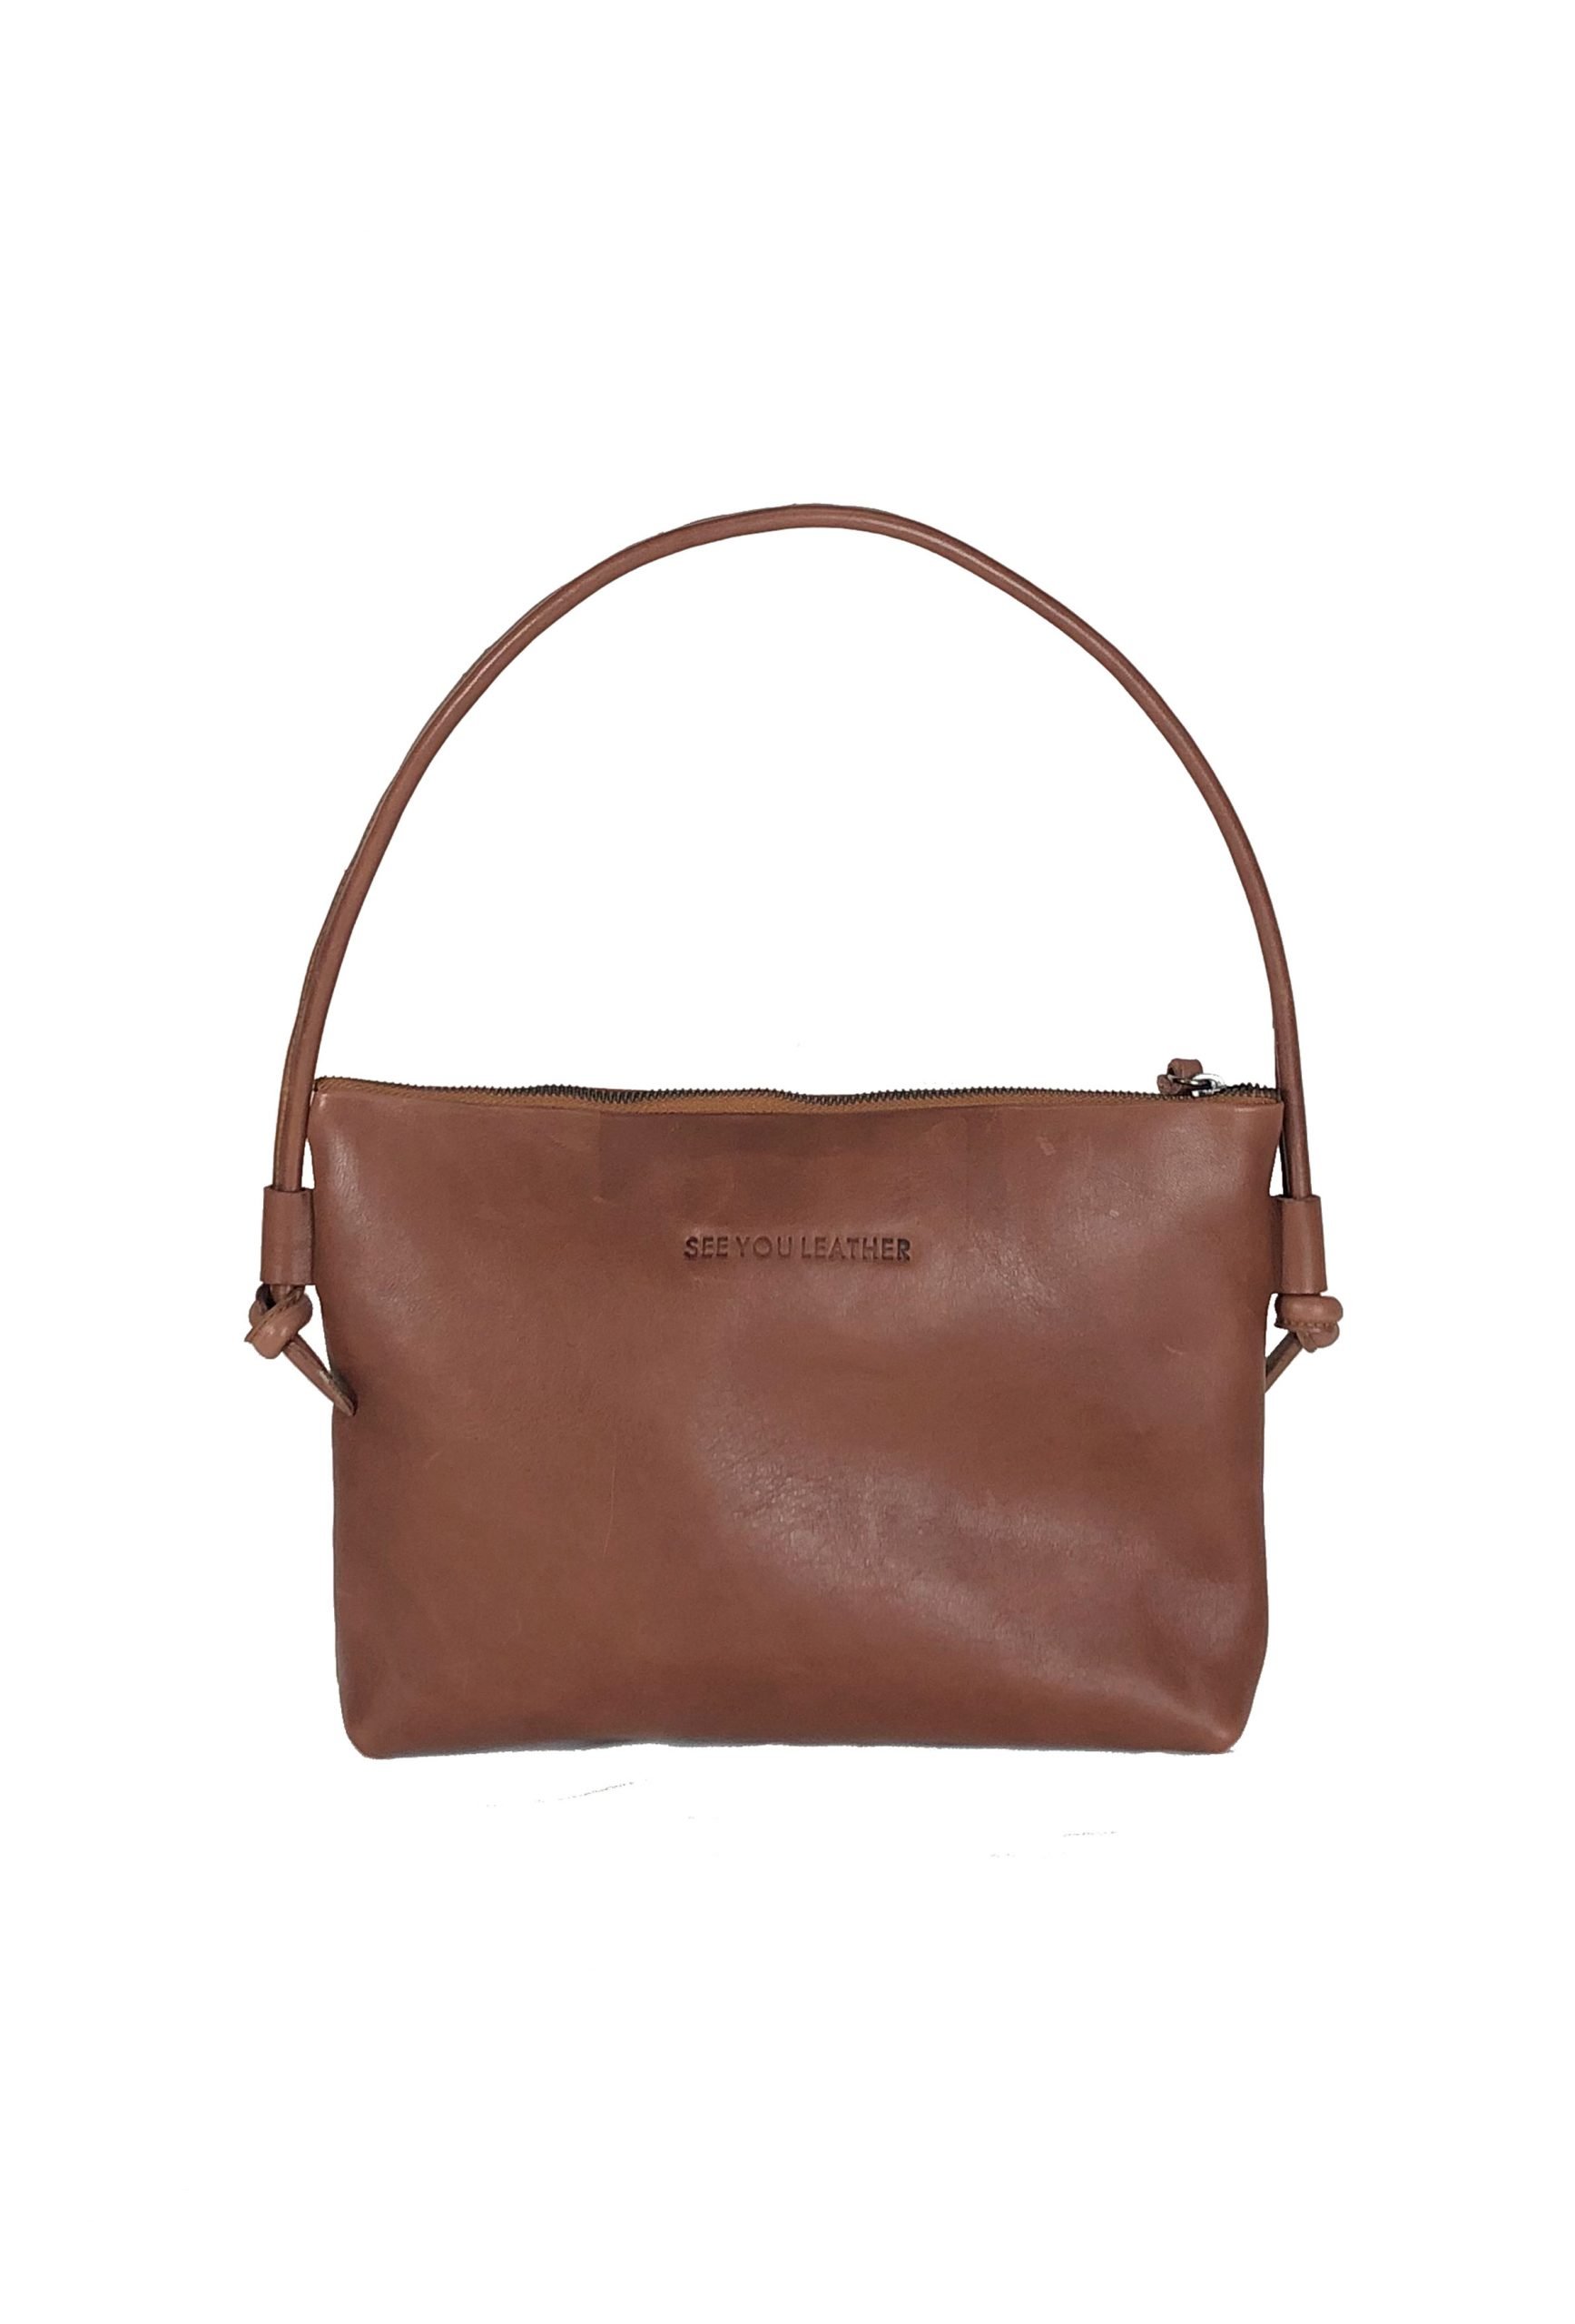 Georgia-brown-leather-women-handbags-cuero-bolso-de-mano-mujer-syl